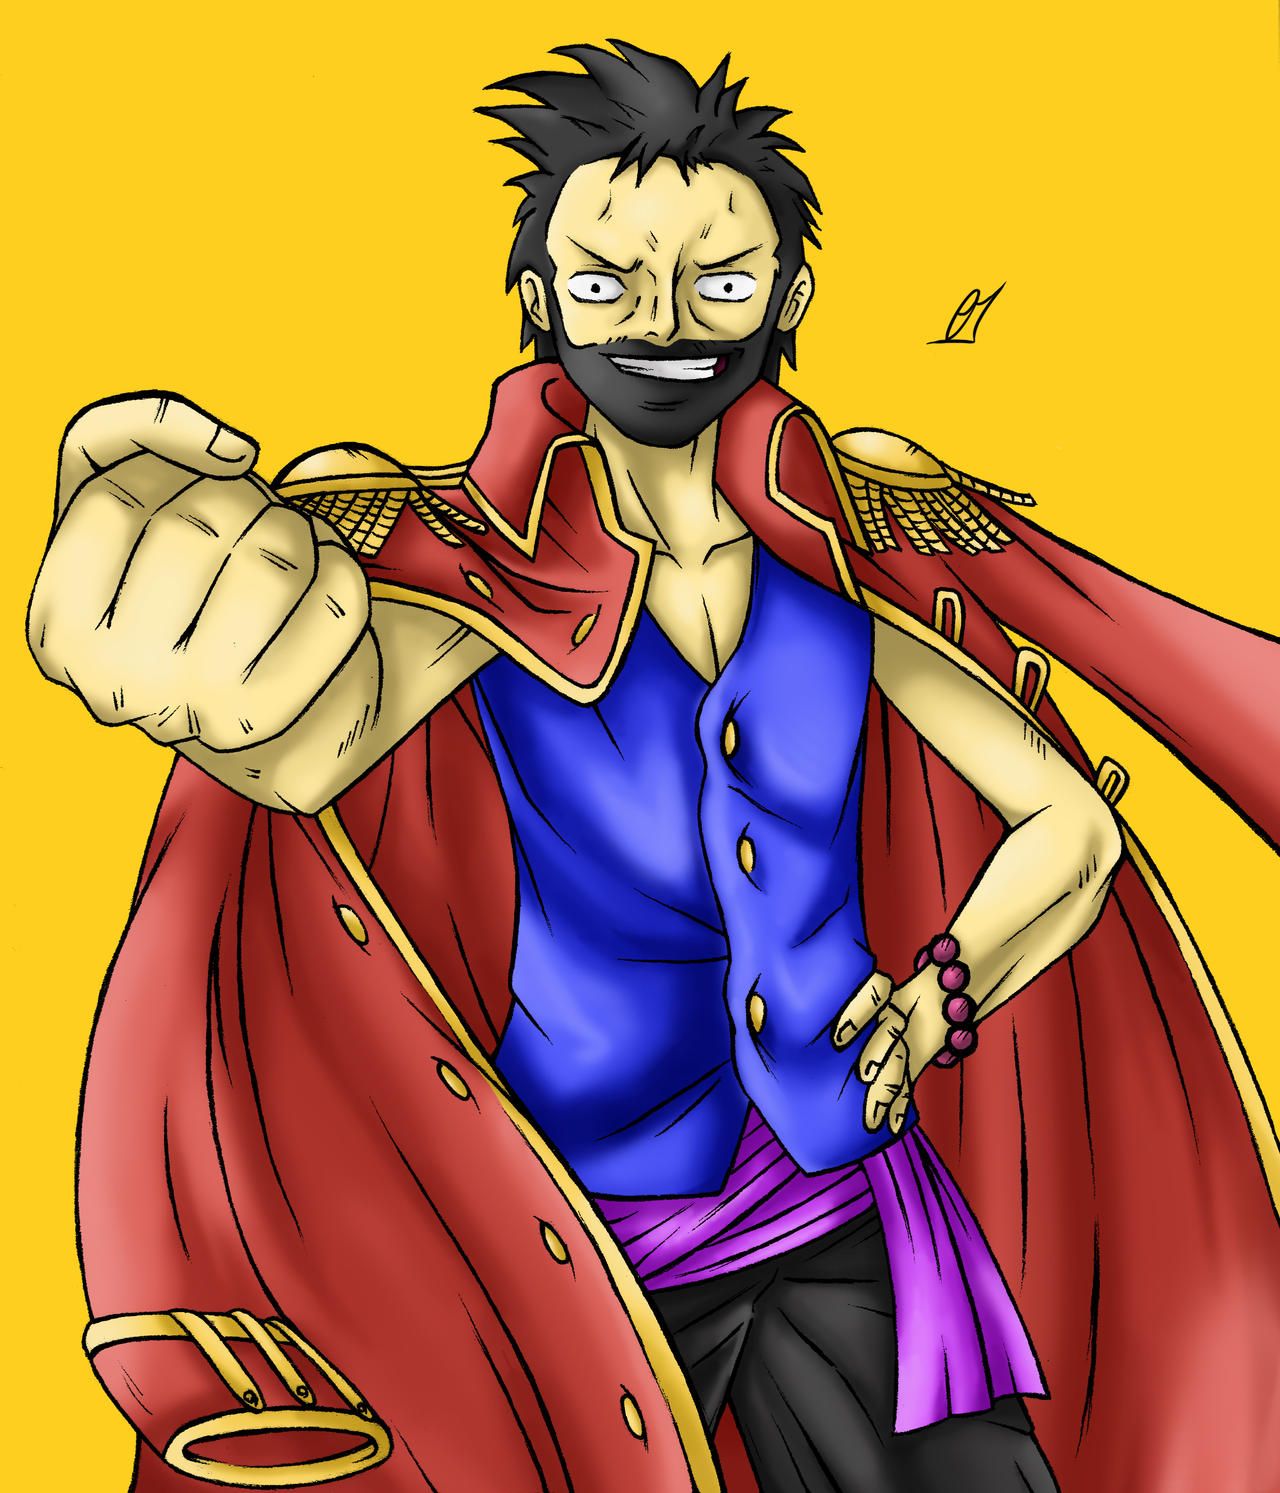 Bạn là một fan hâm mộ của bộ anime One Piece? Hãy tạo cho mình một avatar anime One Piece độc đáo với My Anime Avatar - One Piece Edition 2024 của Sketceodrawings trên DeviantArt. Tận hưởng trọn vẹn thế giới One Piece với chiếc avatar của riêng bạn!